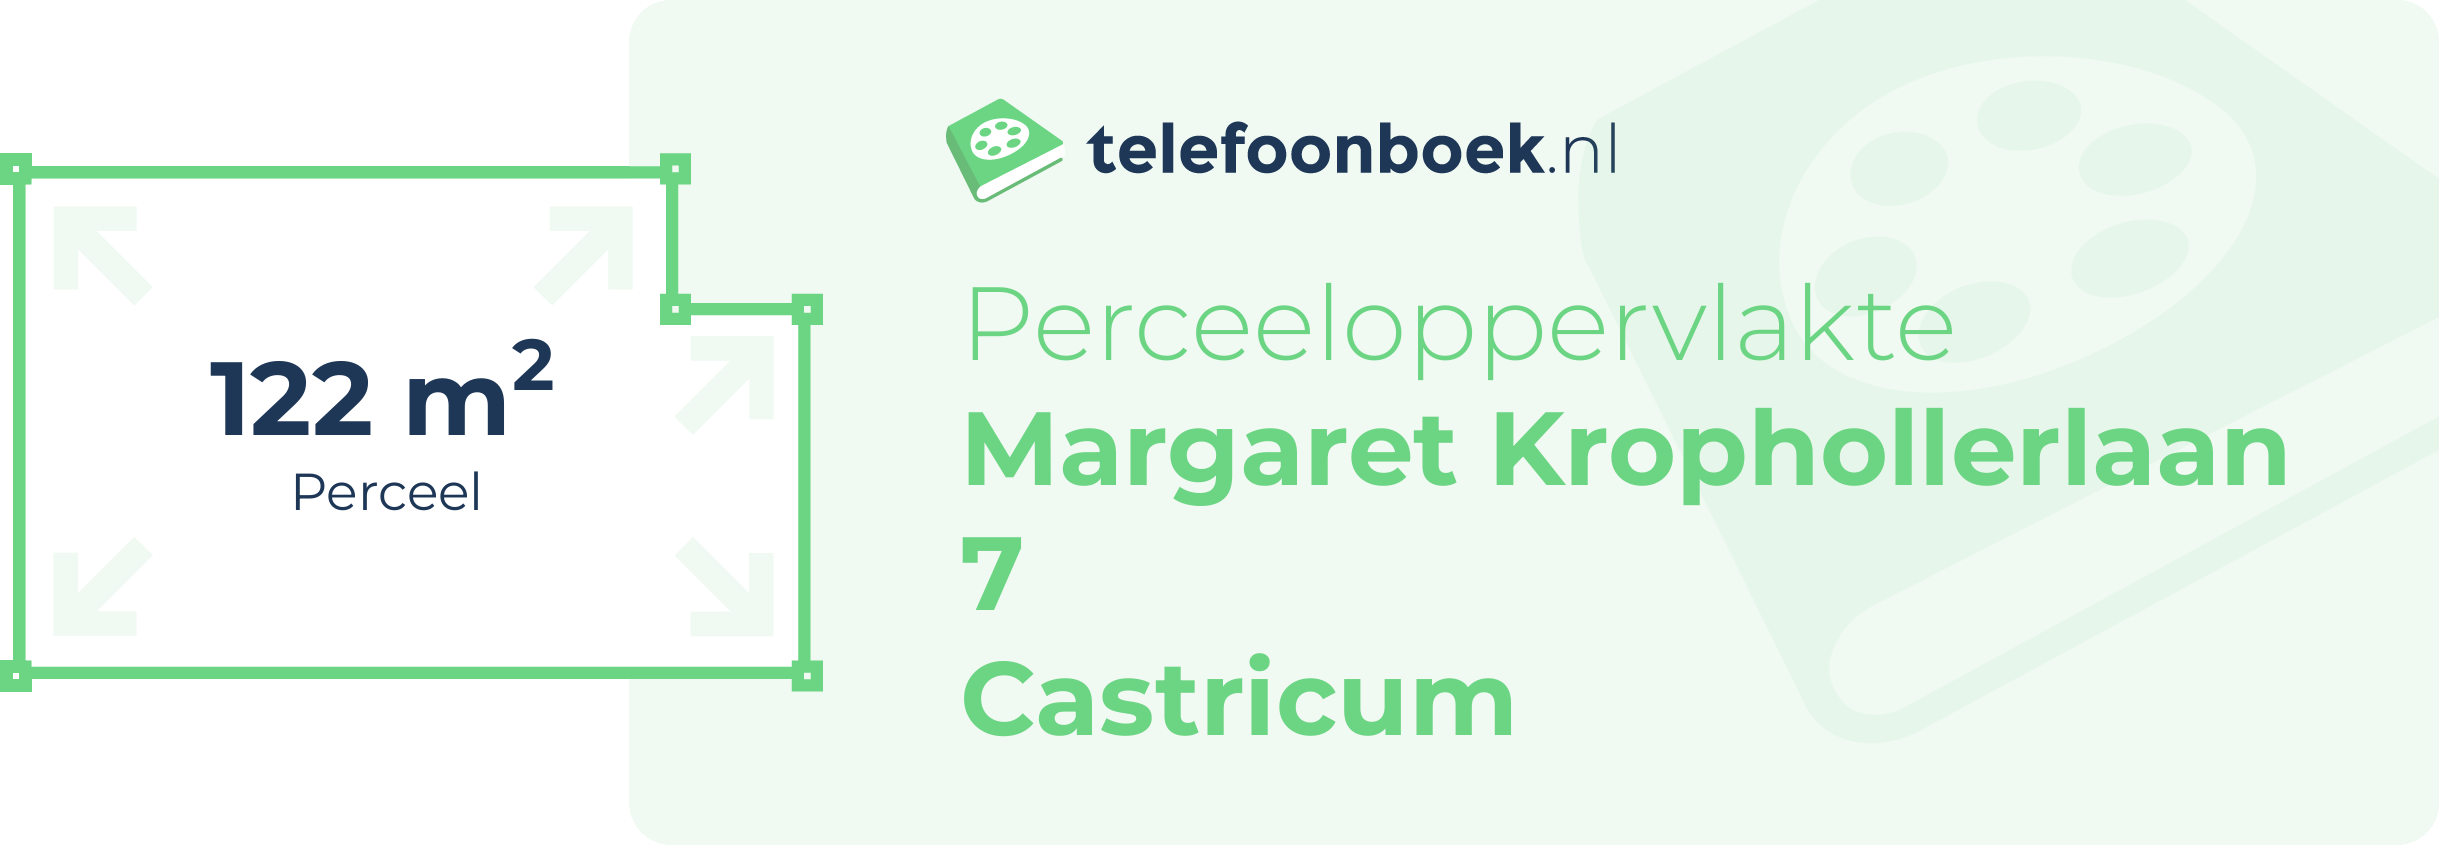 Perceeloppervlakte Margaret Krophollerlaan 7 Castricum